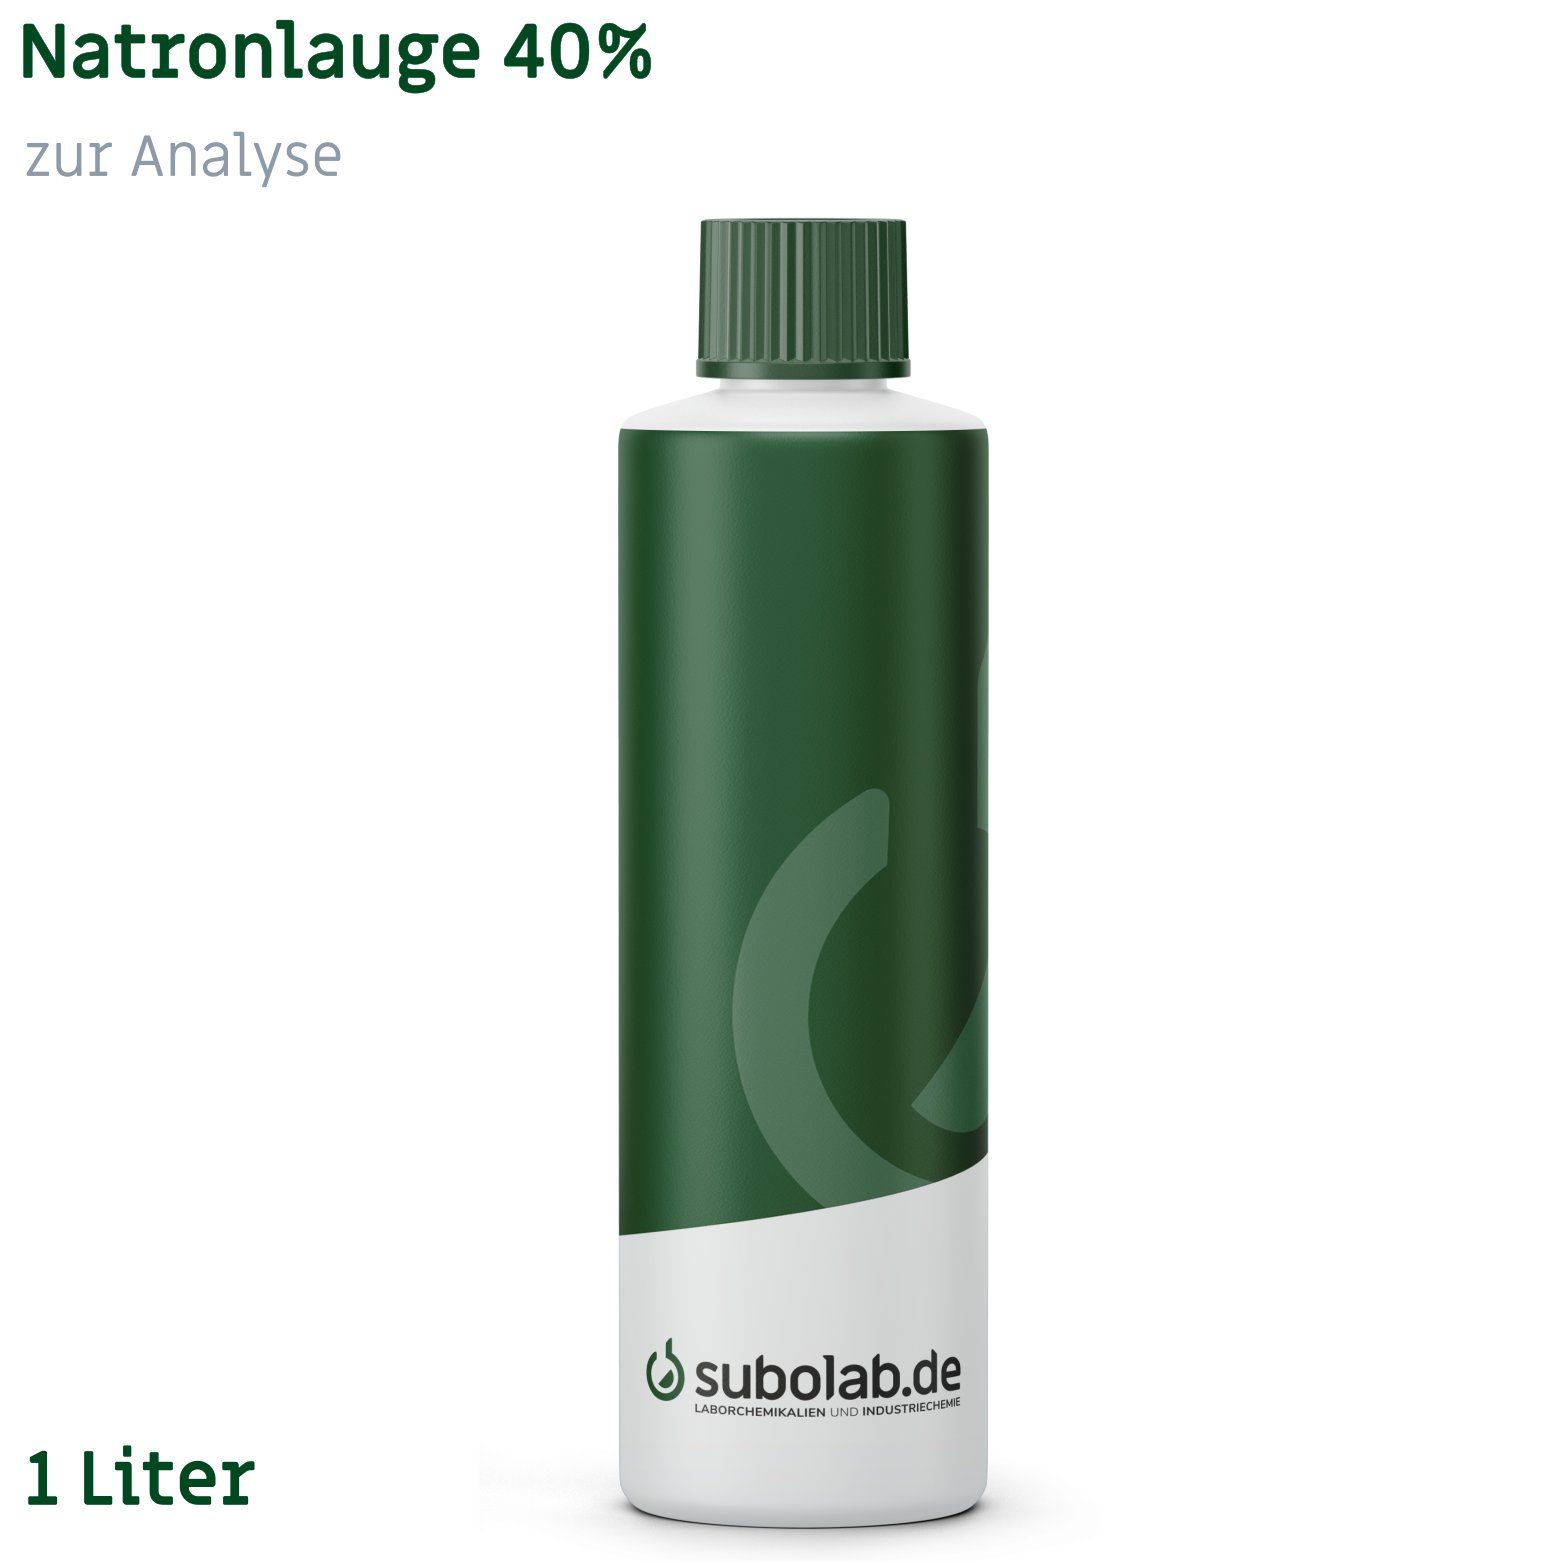 Bild von Natronlauge 40% zur Analyse (1 Liter)